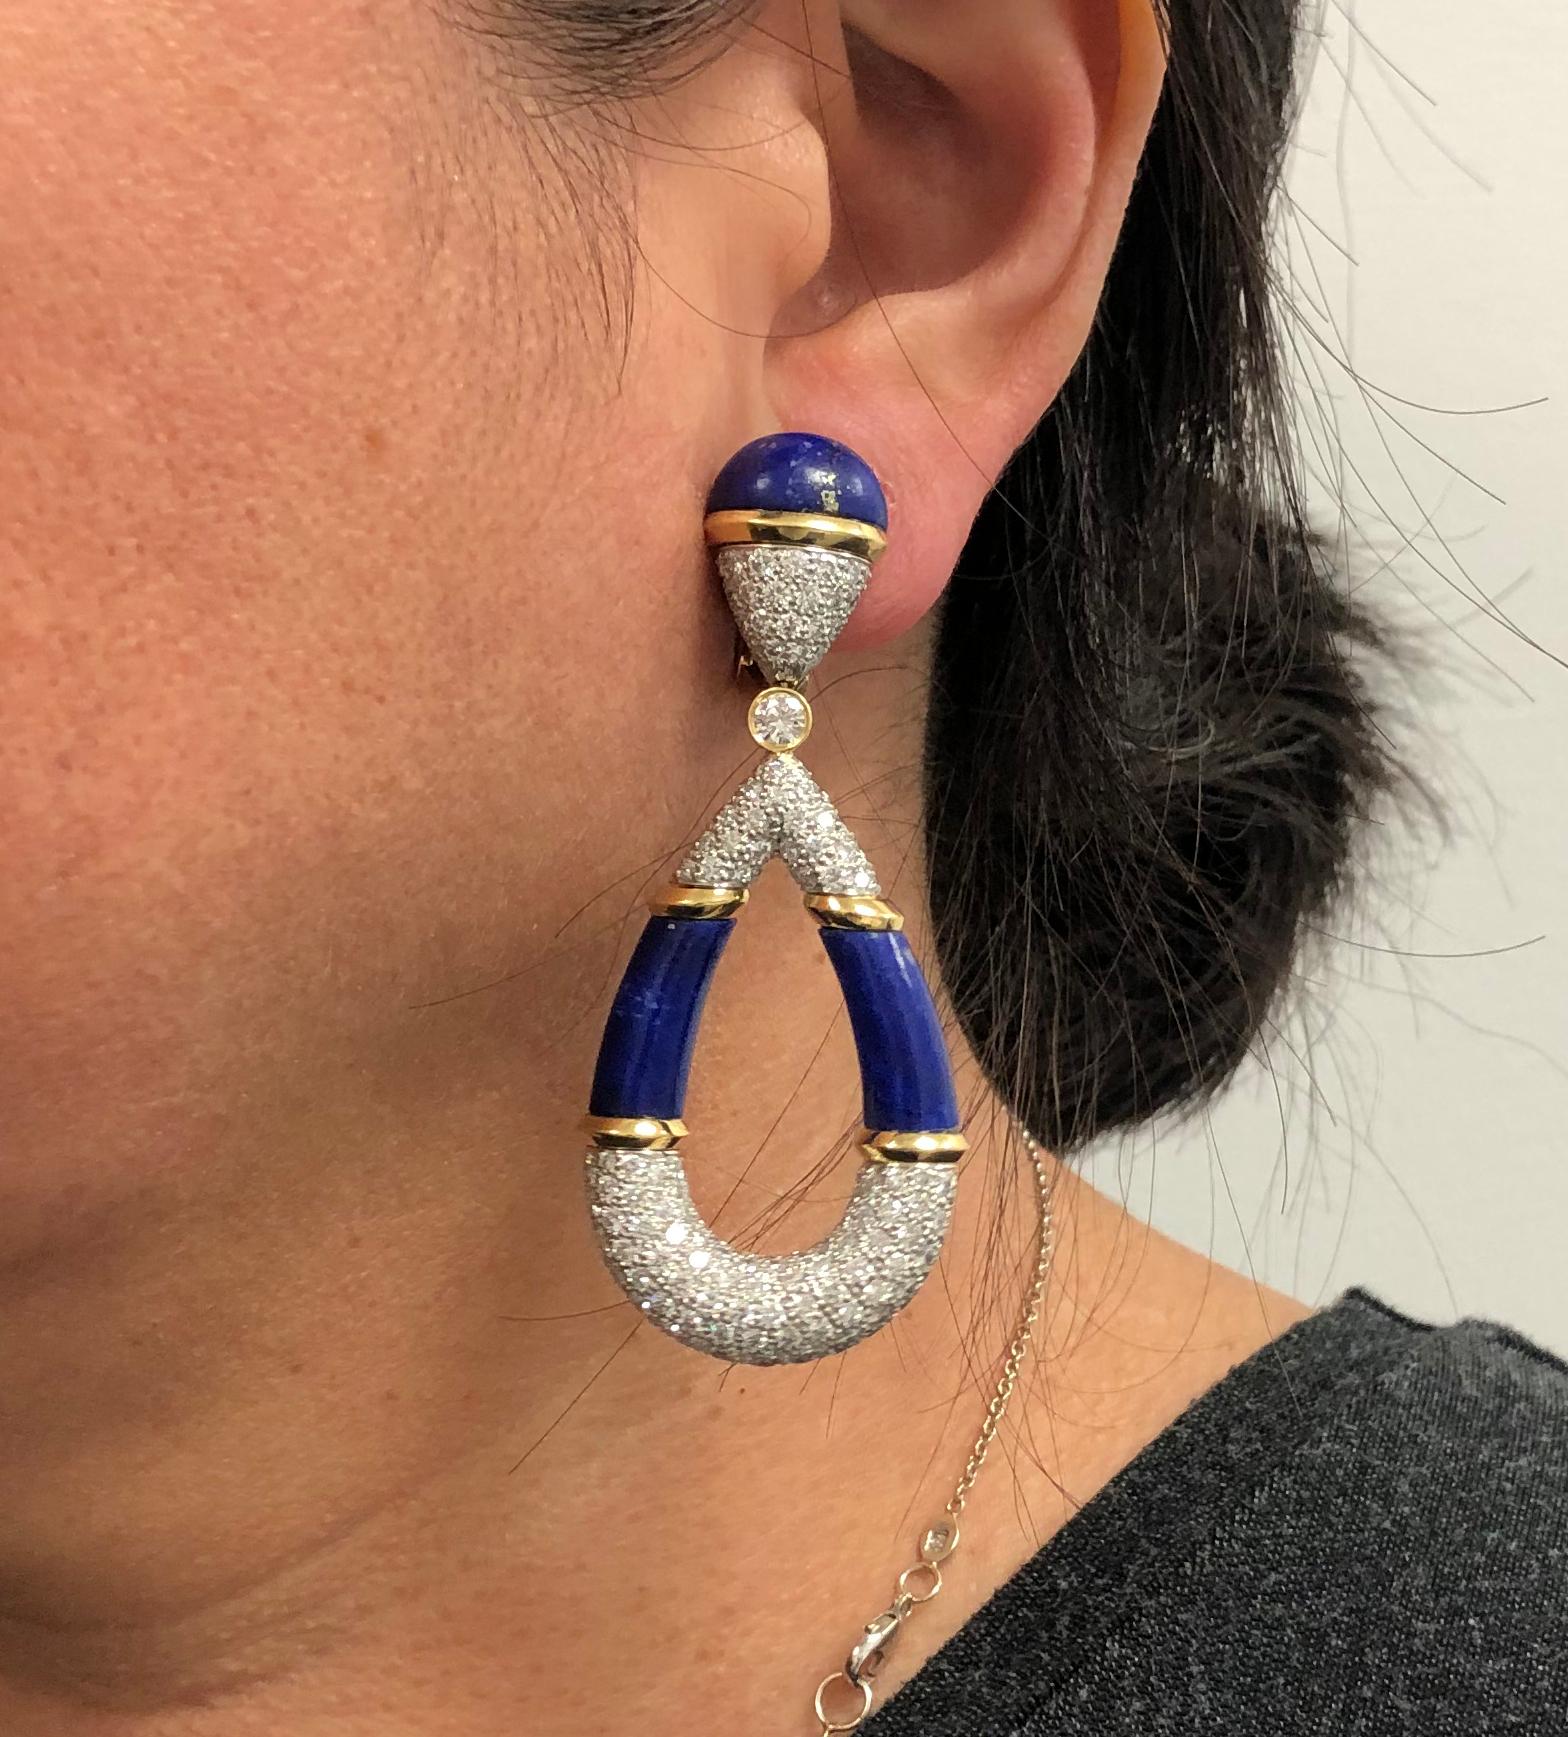 saloon girl earrings